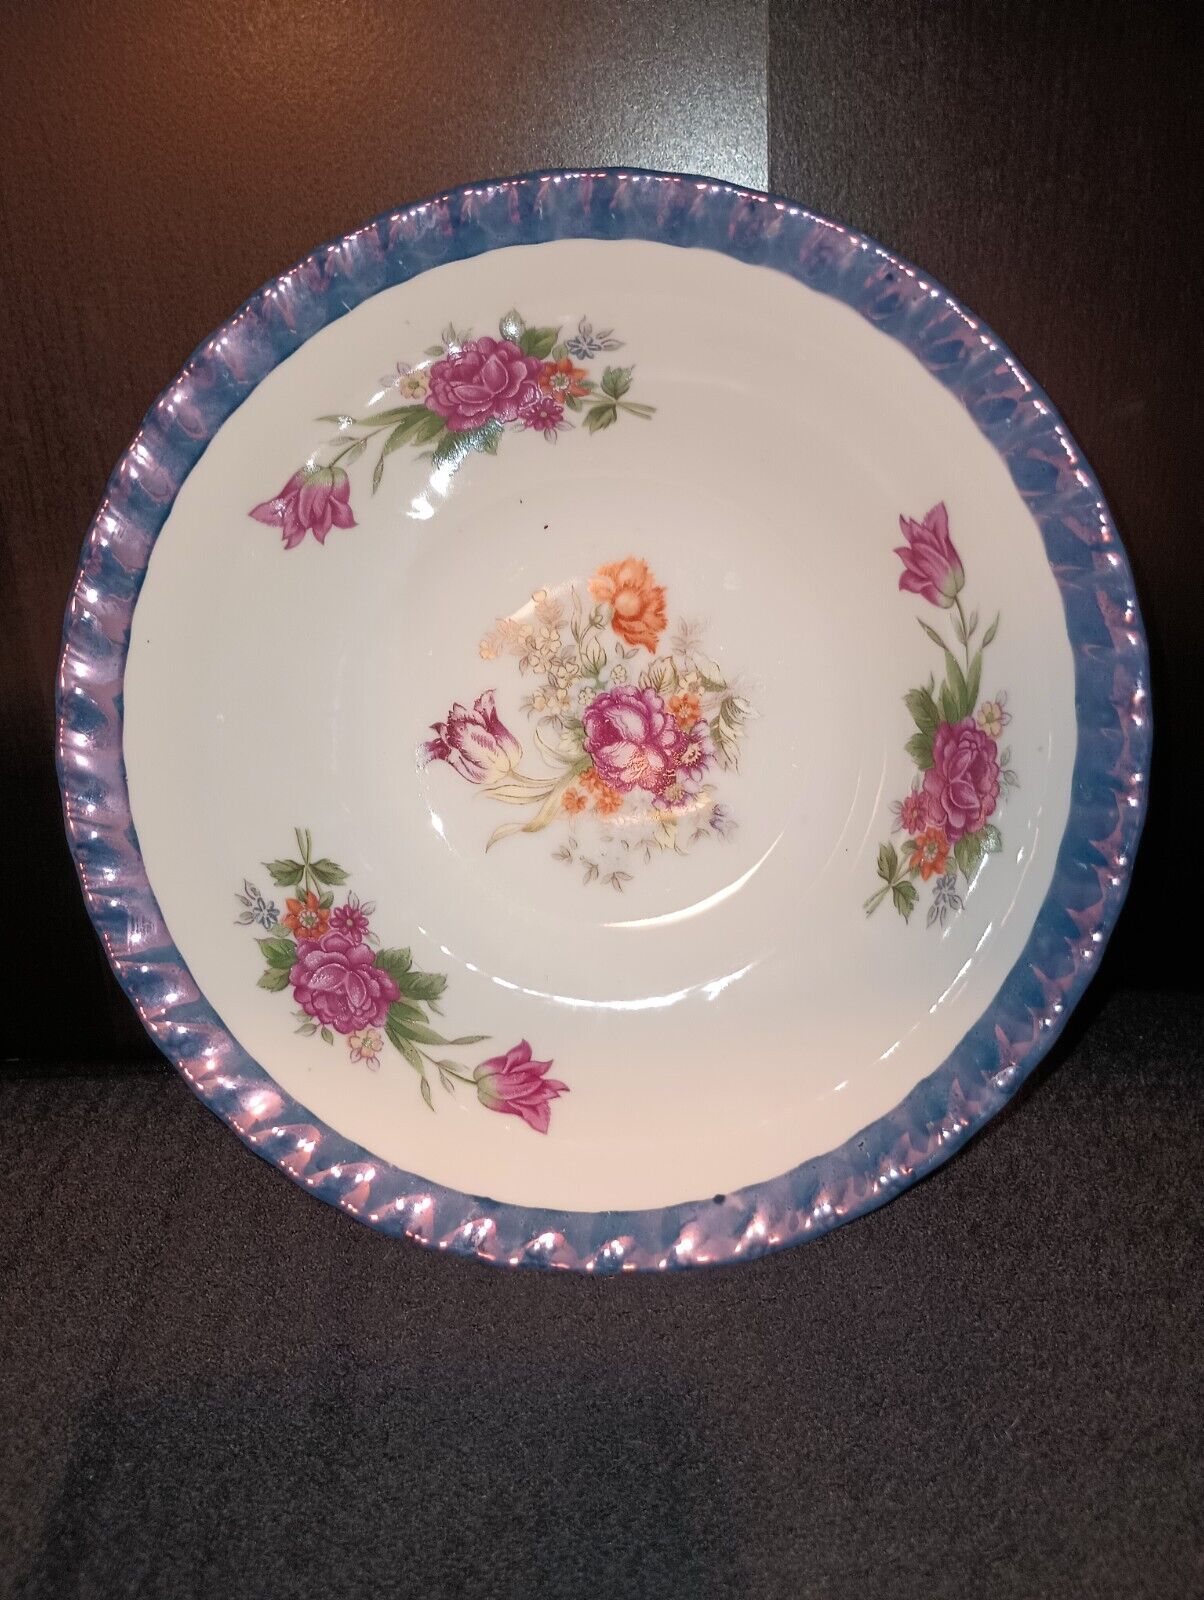 Vintage Floral Bowl From Japan